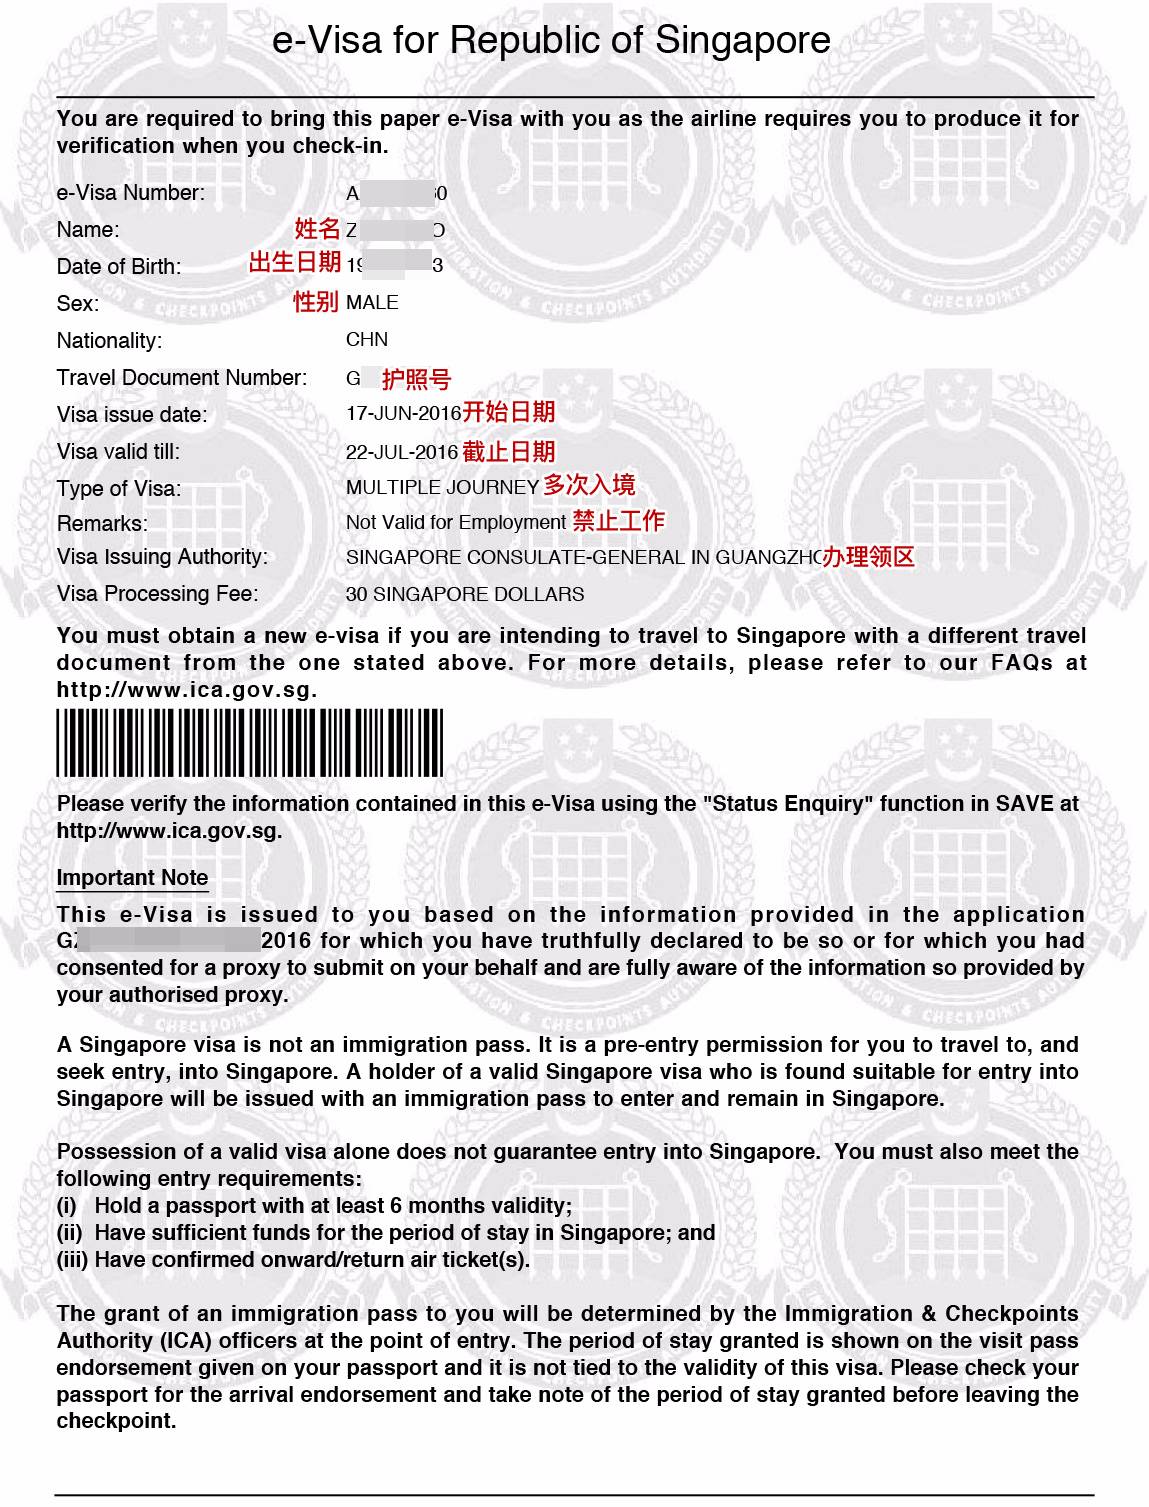 新加坡团队旅游签证需要资料:护照首页 机票 团签表,所有材料电子版